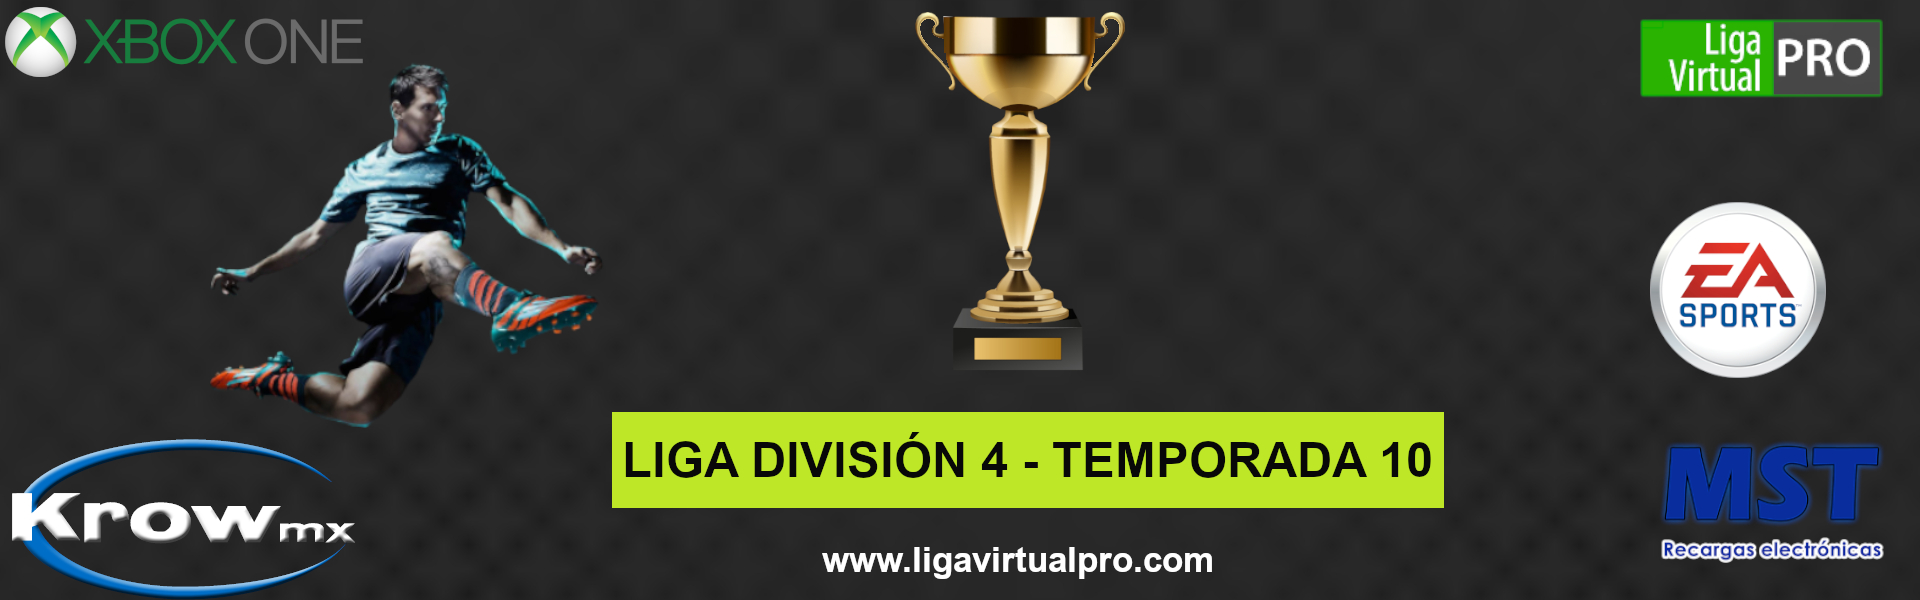 Logo-LIGA DIVISION 4 (B) - TEMPORADA 10